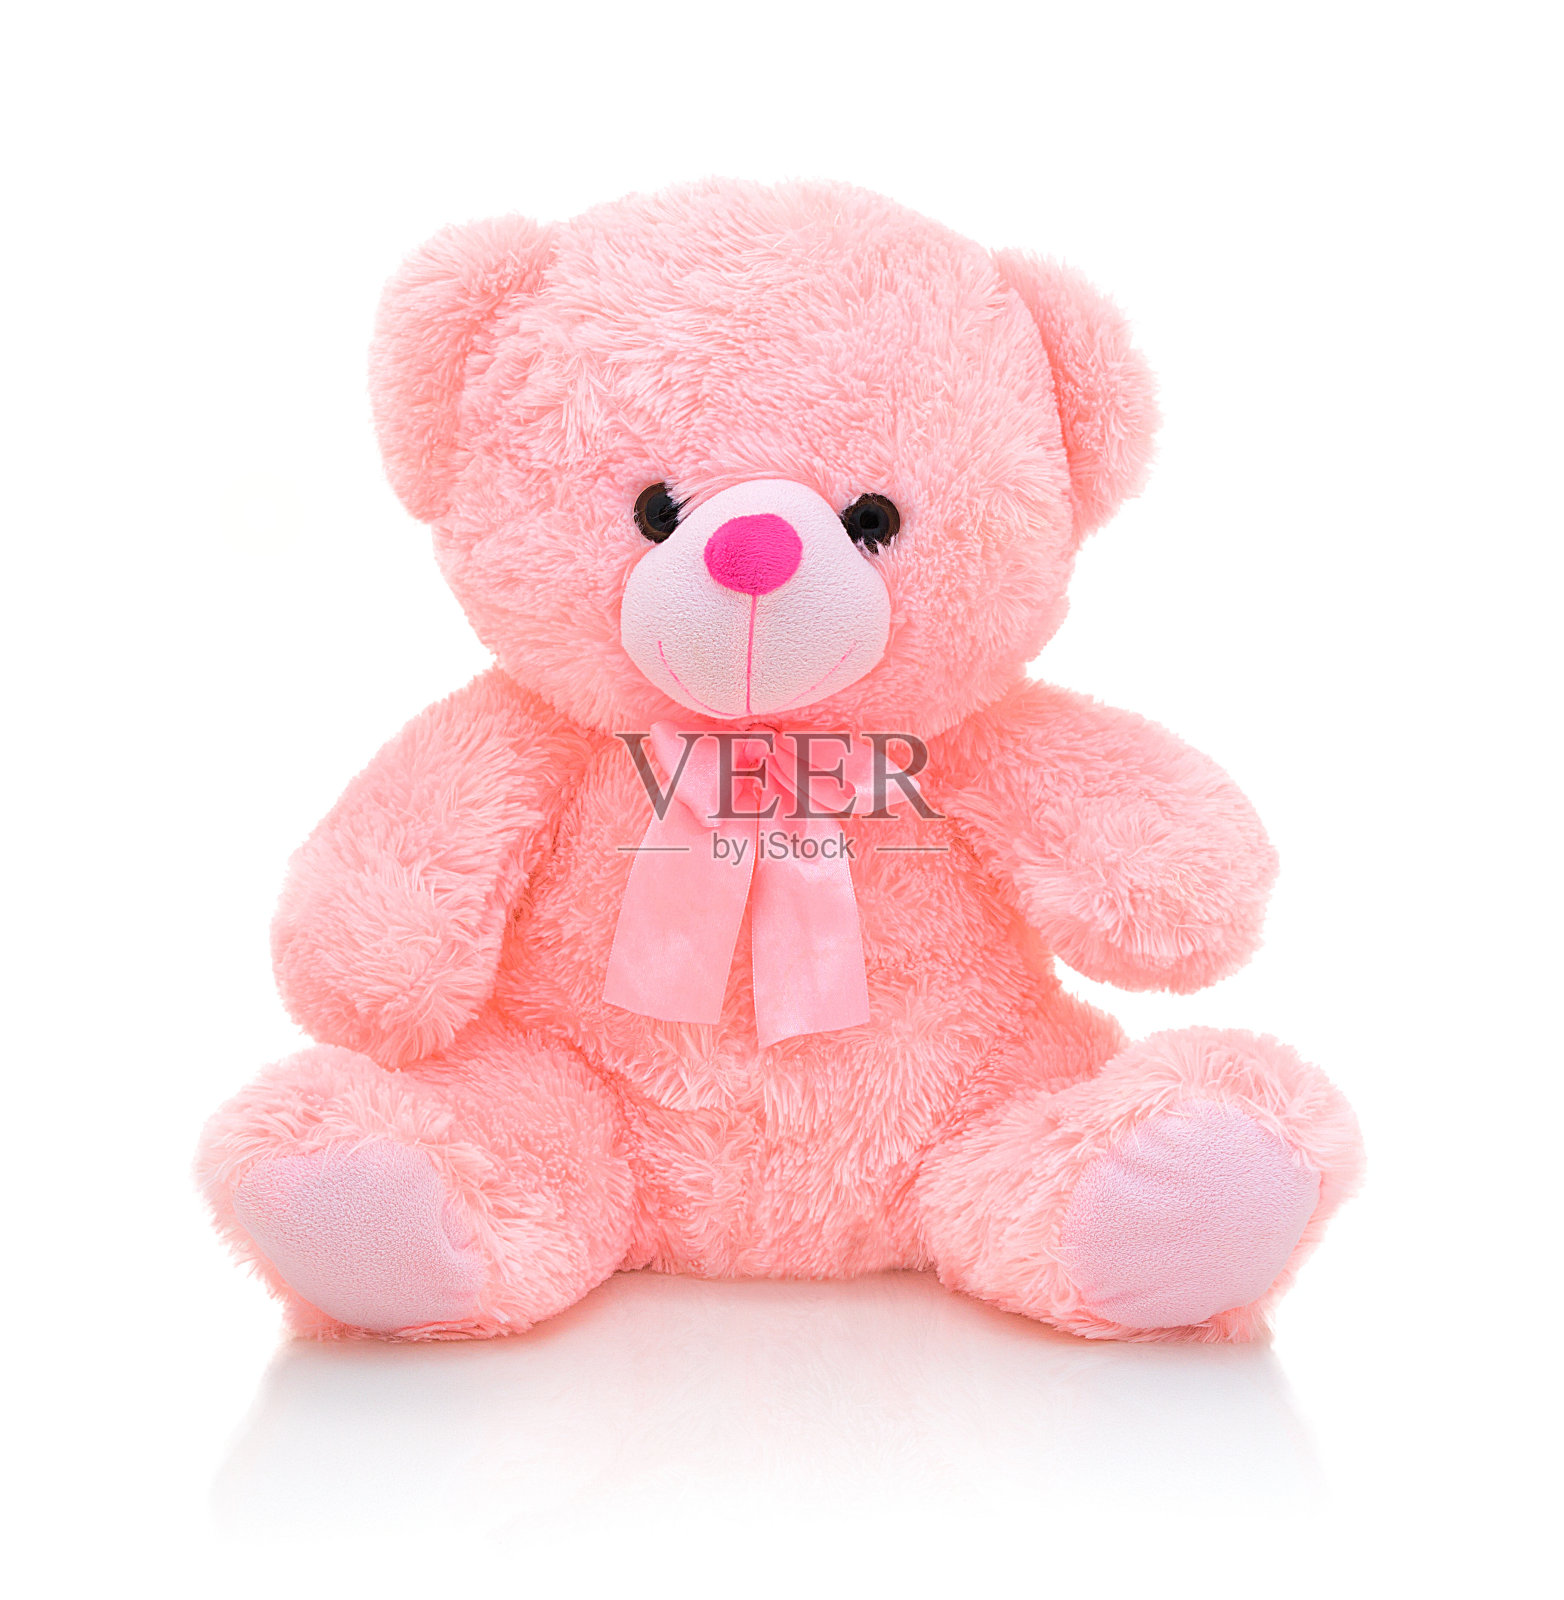 可爱的粉红色熊娃娃与弓孤立在白色背景与阴影反射。顽皮的亮粉色熊坐在白色的衬垫上。泰迪熊毛绒填充木偶与丝带在白色的背景。照片摄影图片